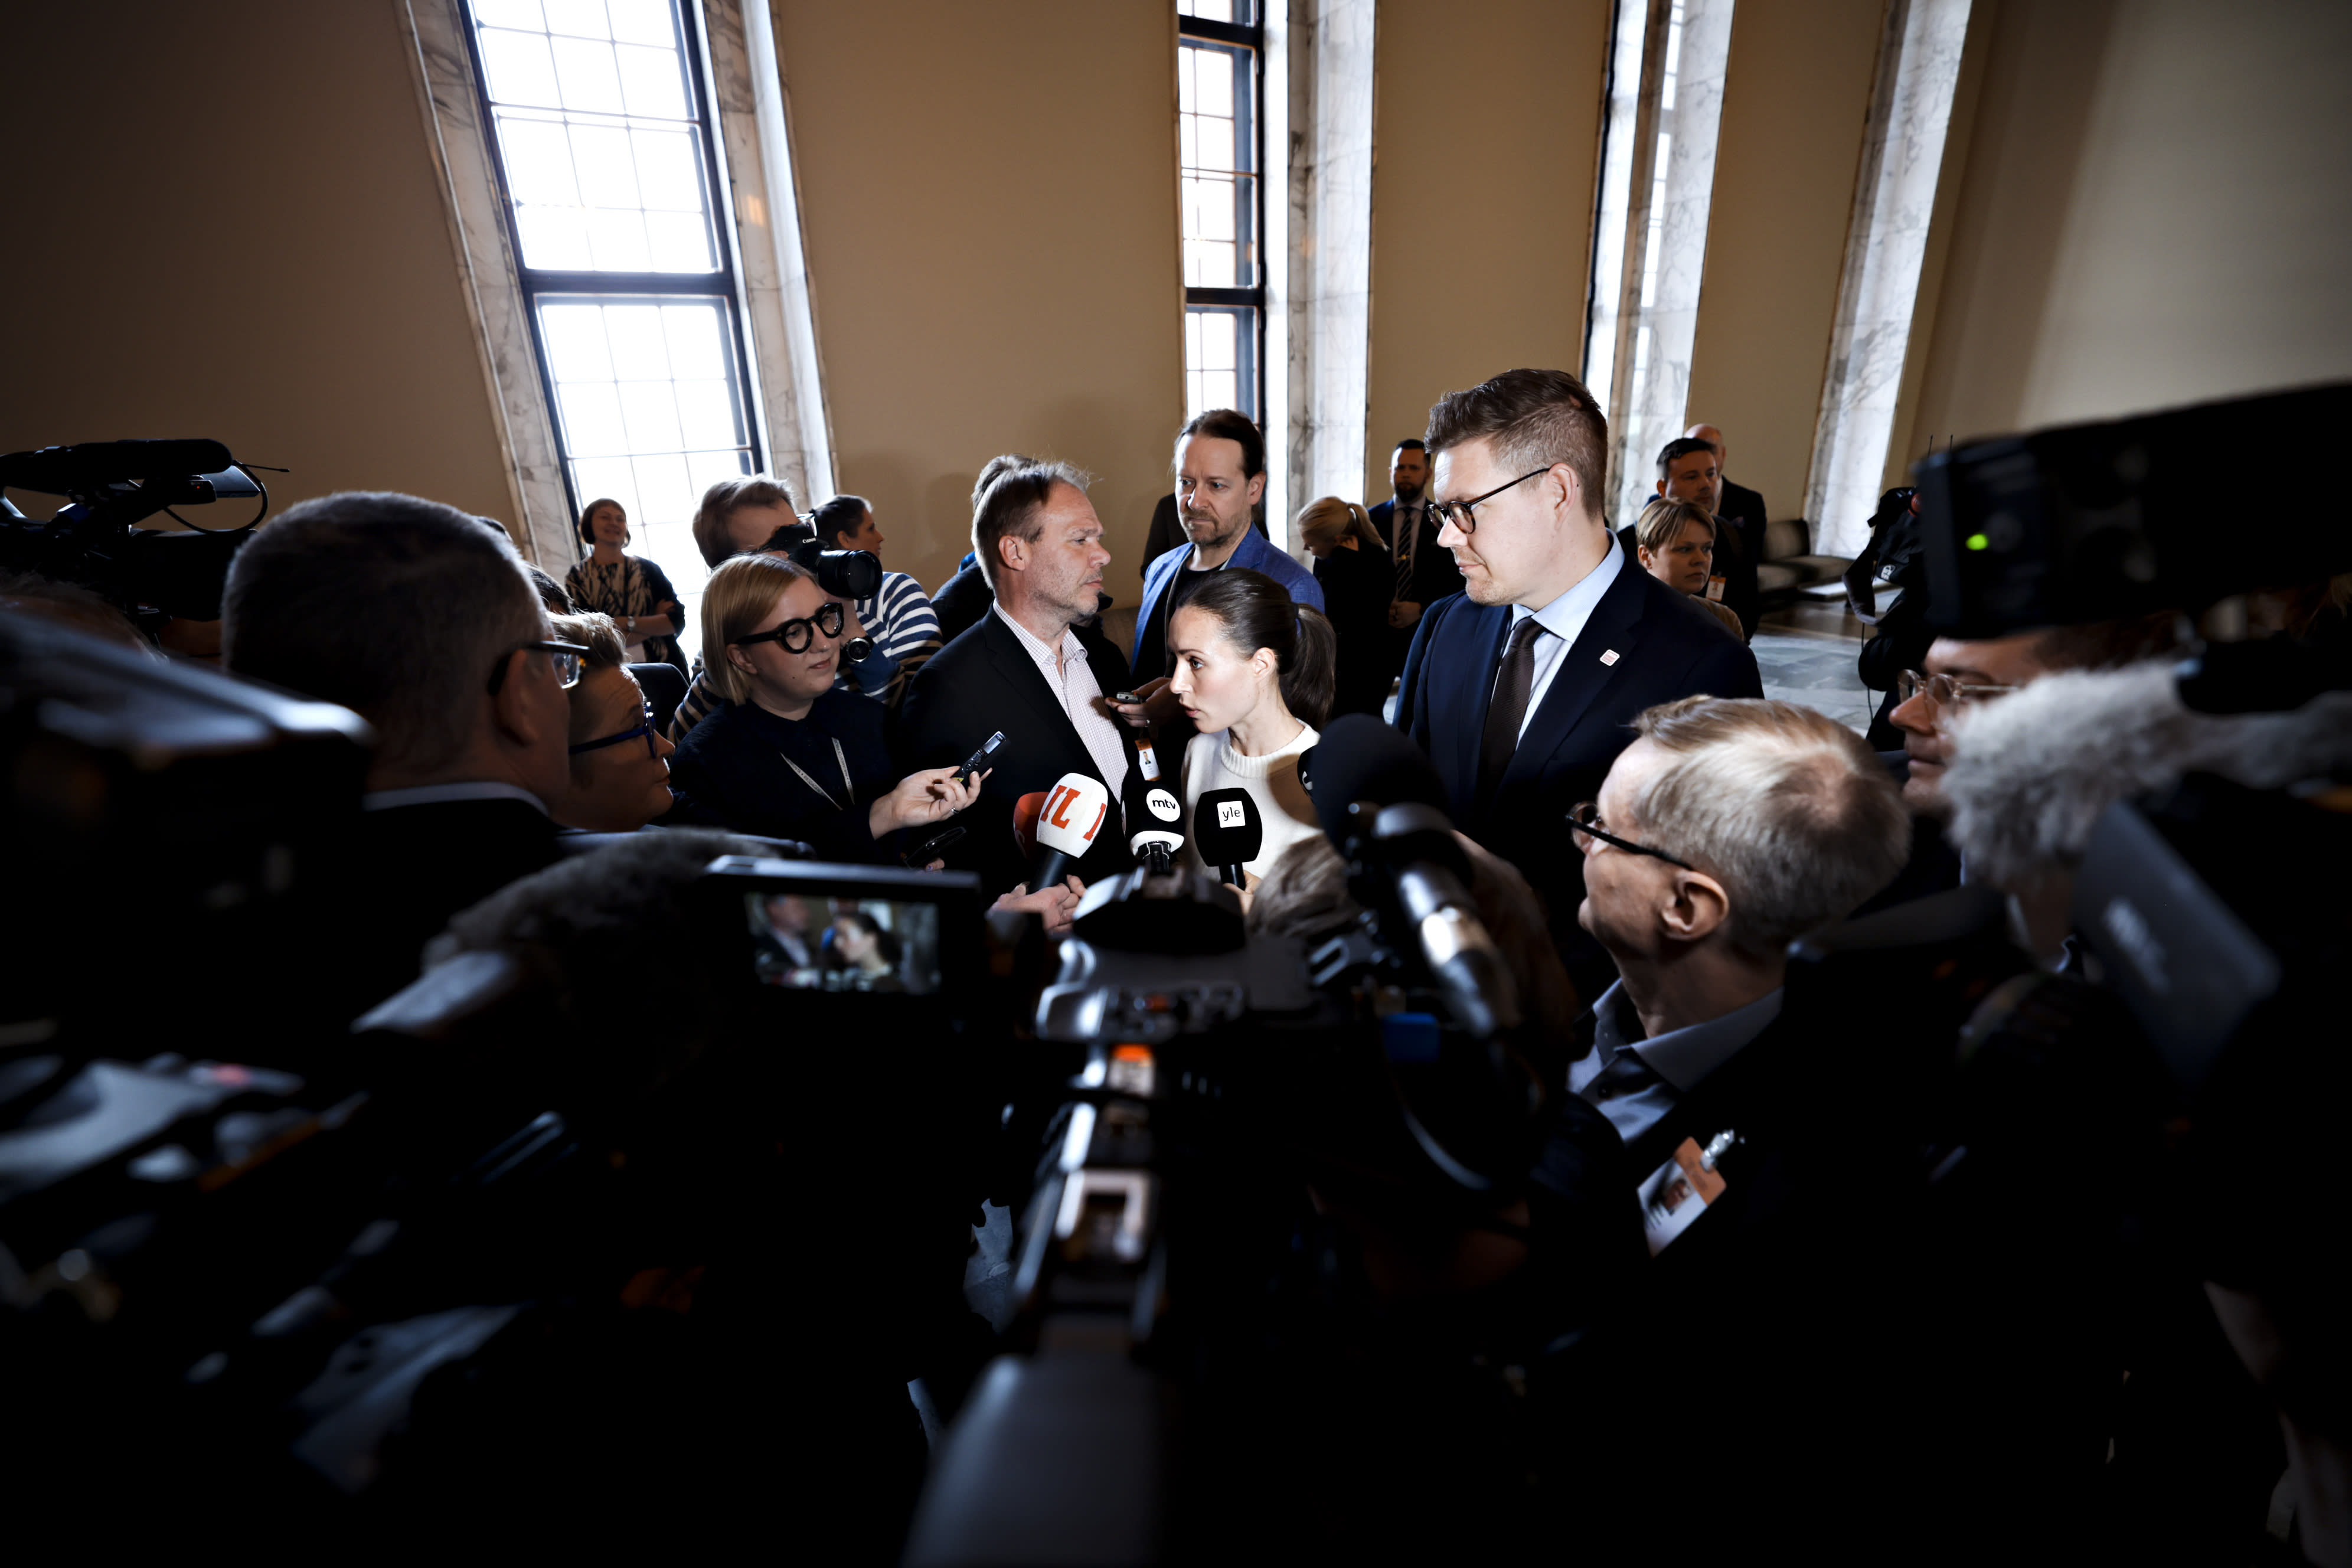 سانا مارين قلقة بشأن فنلندا "في موقف ضعيف" حيث تستعد الأحزاب اليمينية لمحادثات الائتلاف